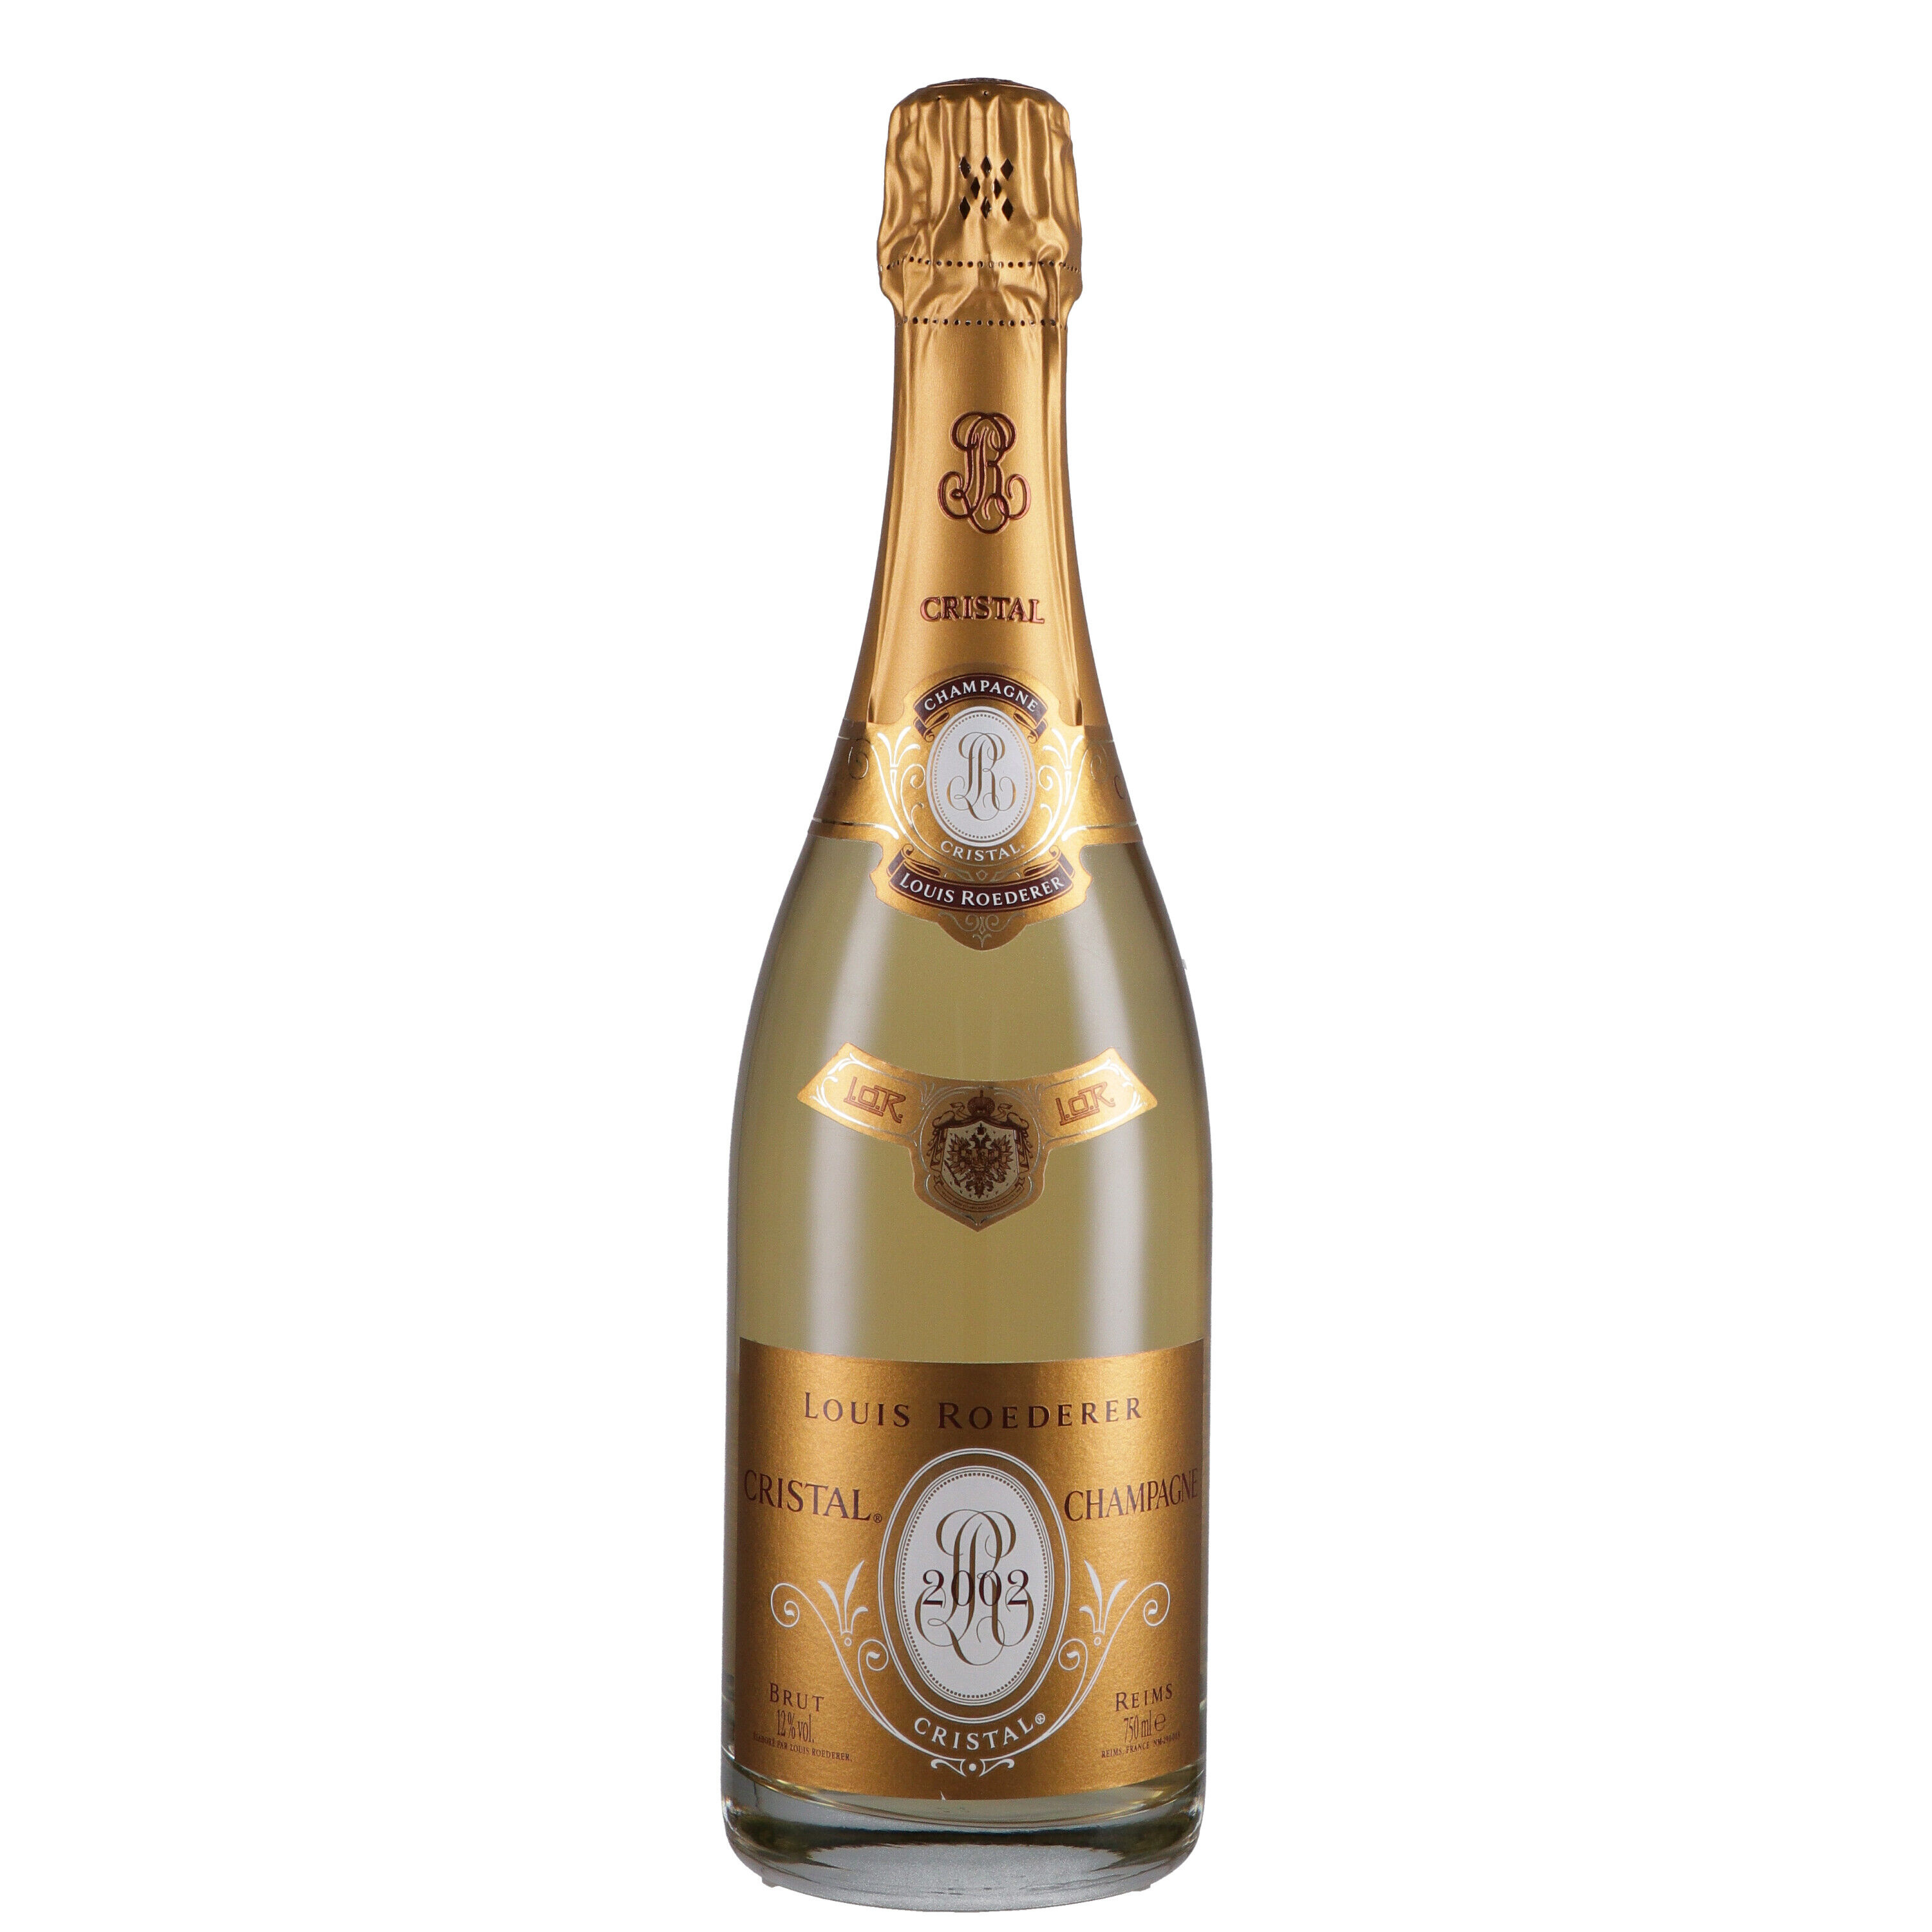 Louis Roederer Champagne Brut Cristal 2002